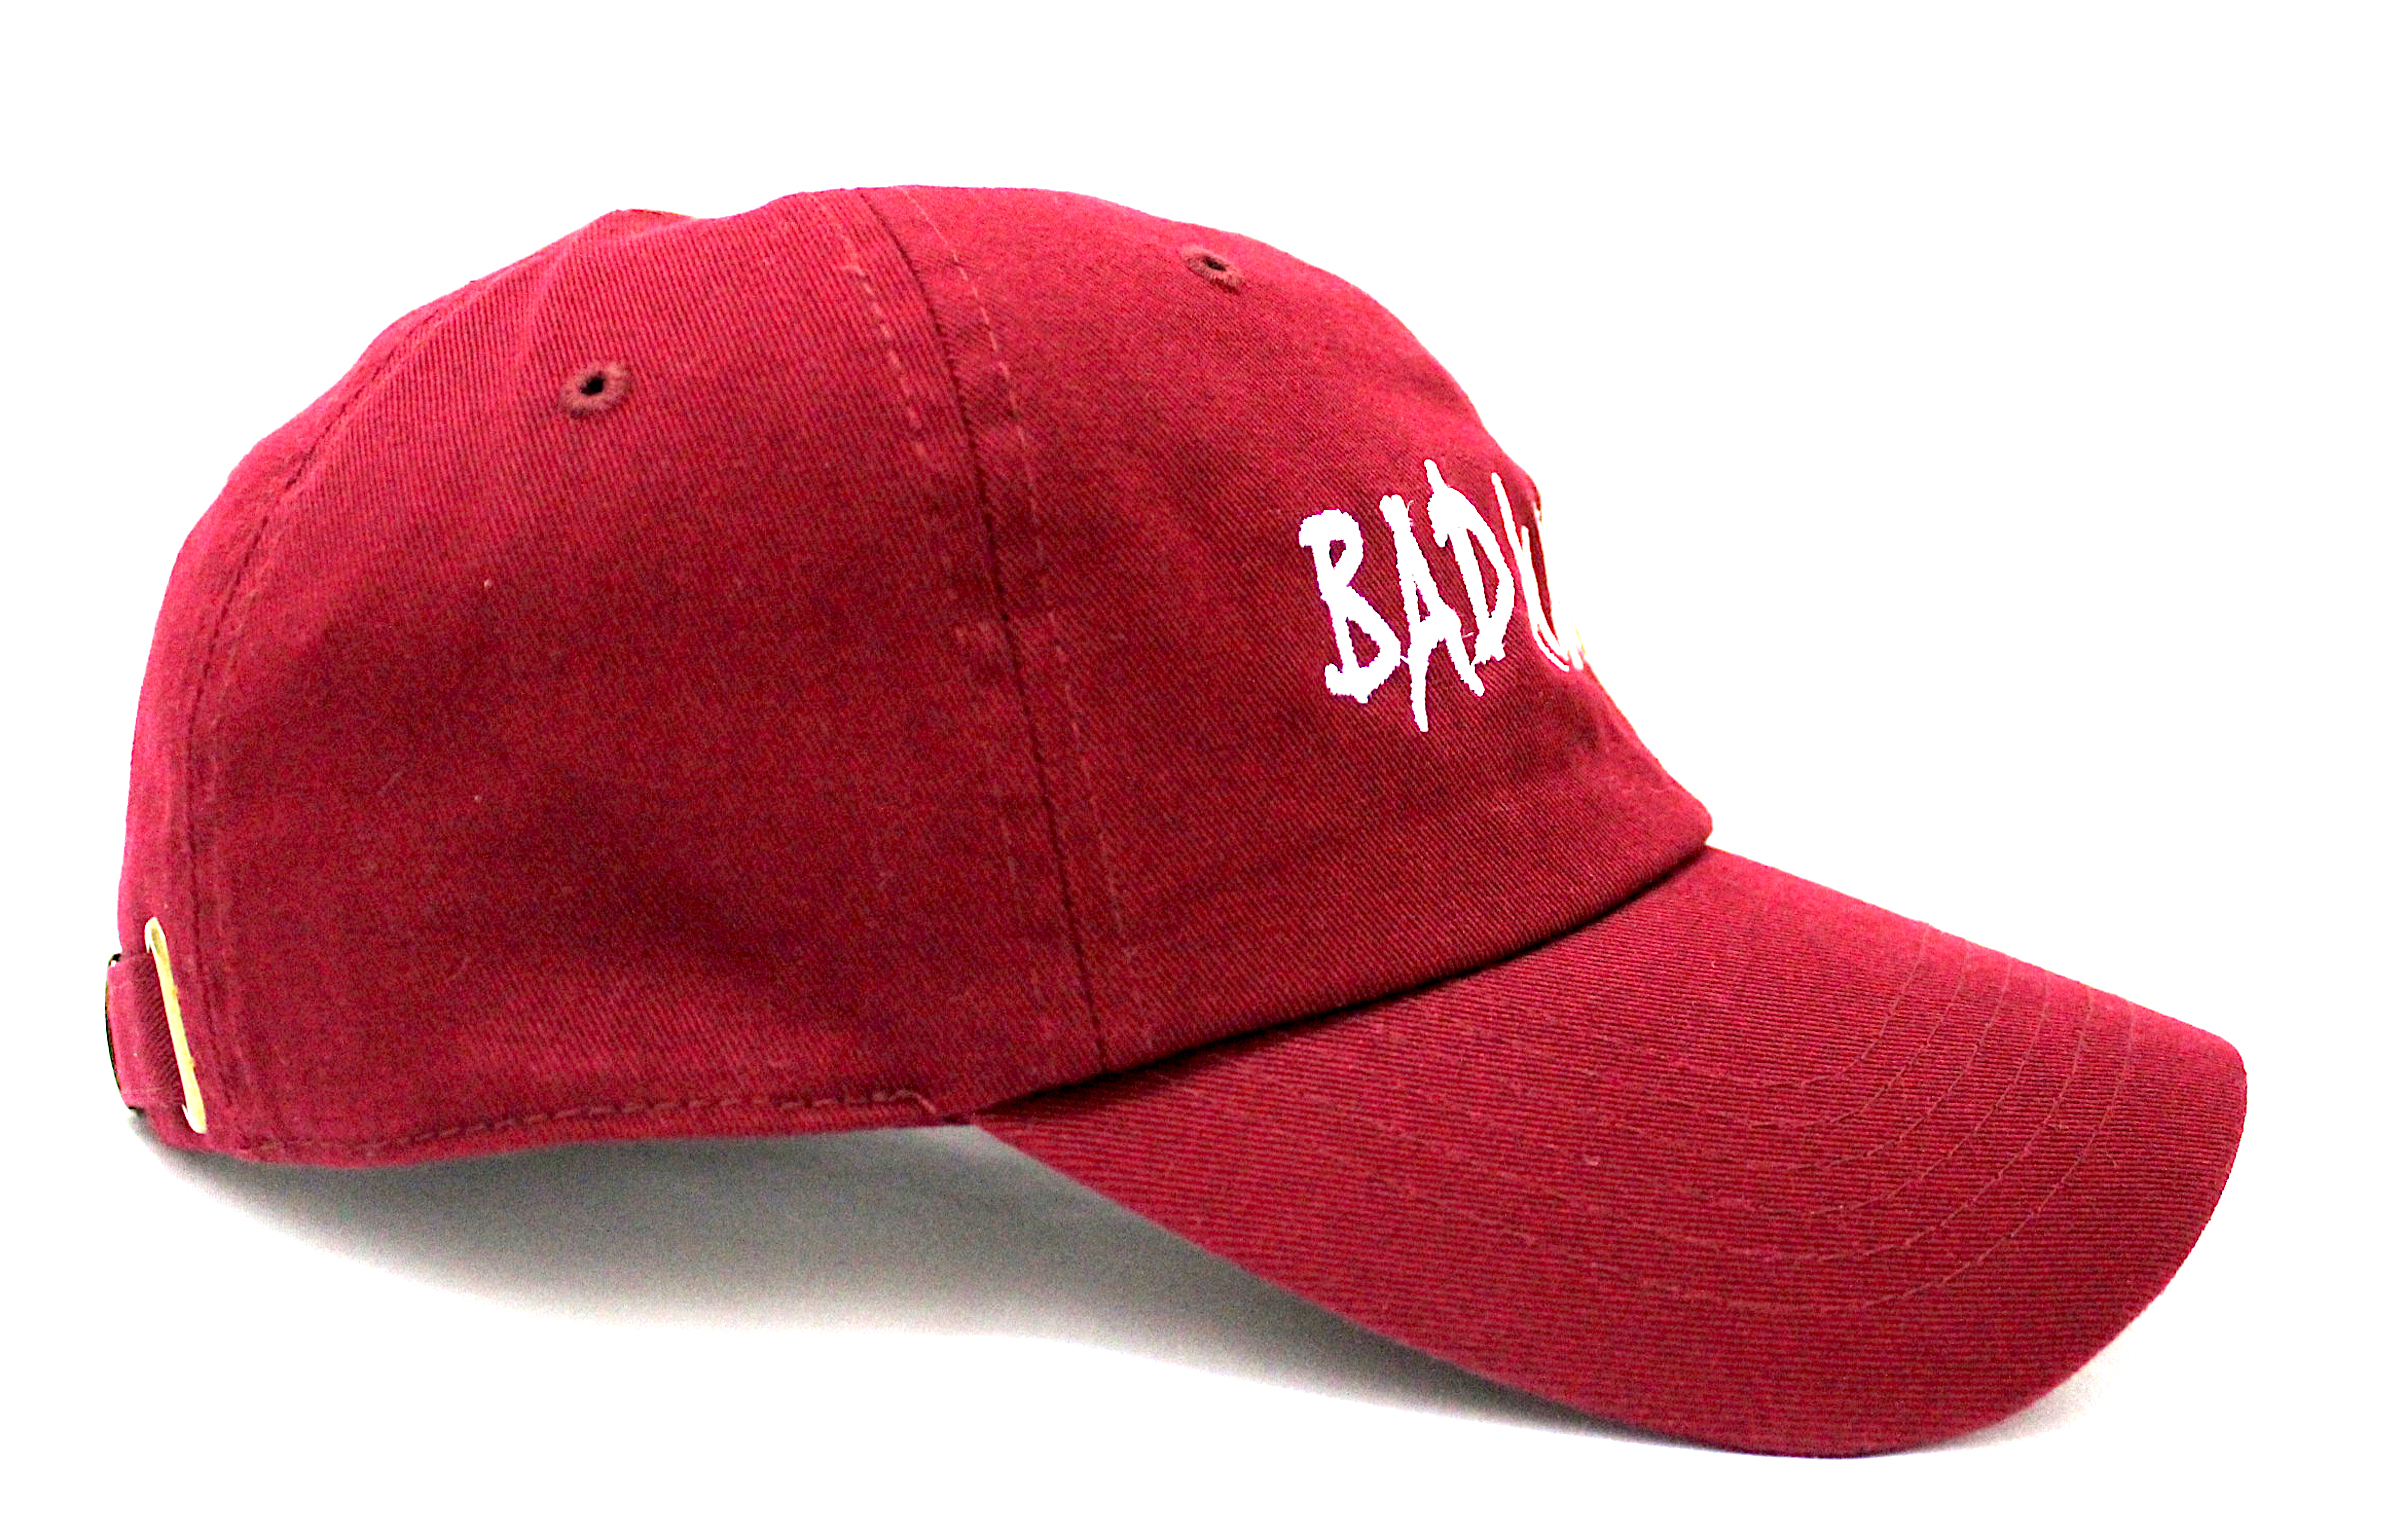 BAD BURG DAD CAP